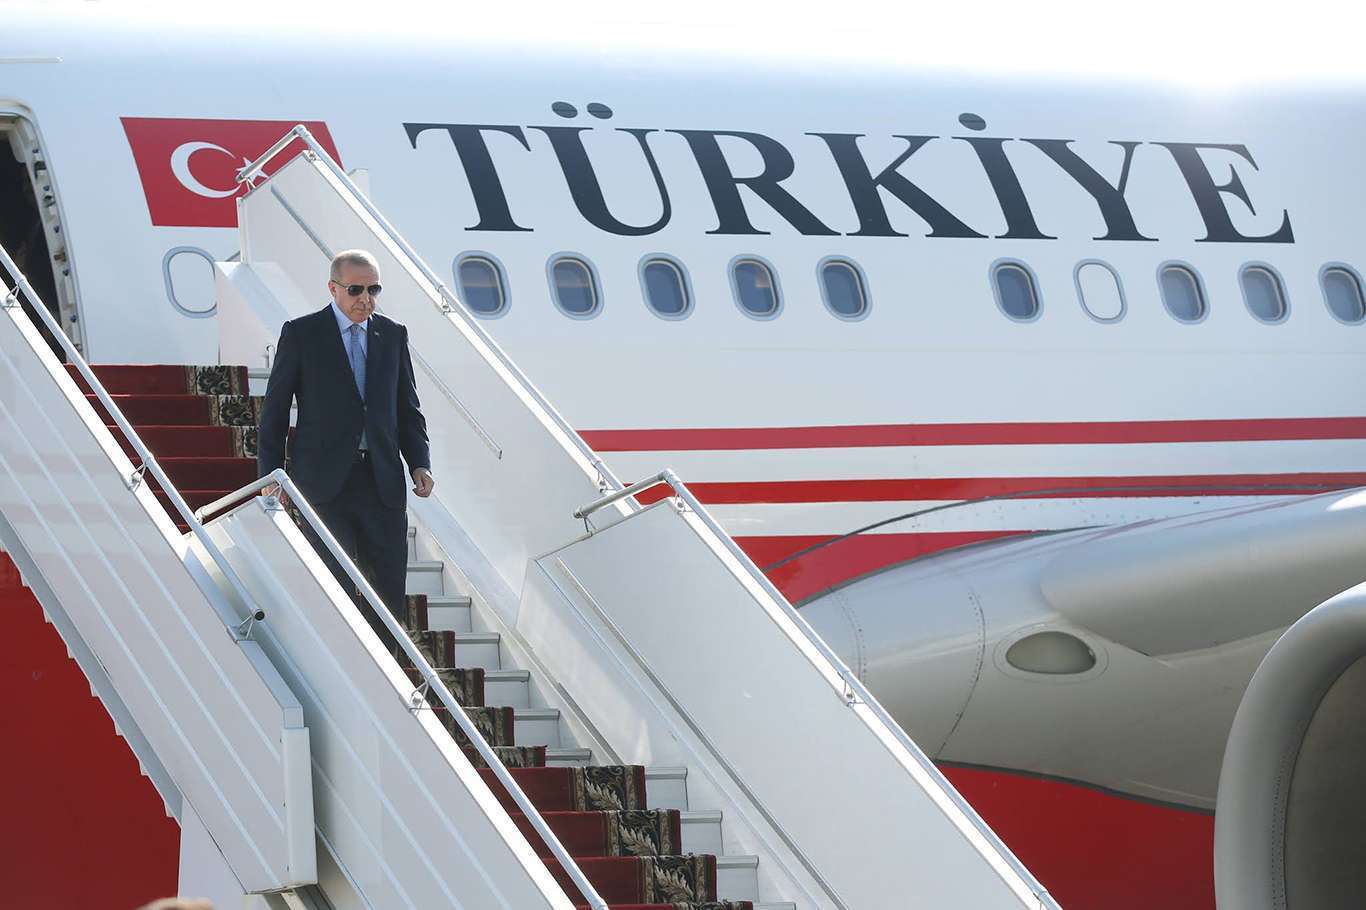 Türkiye’s Erdoğan to visit Azerbaijan